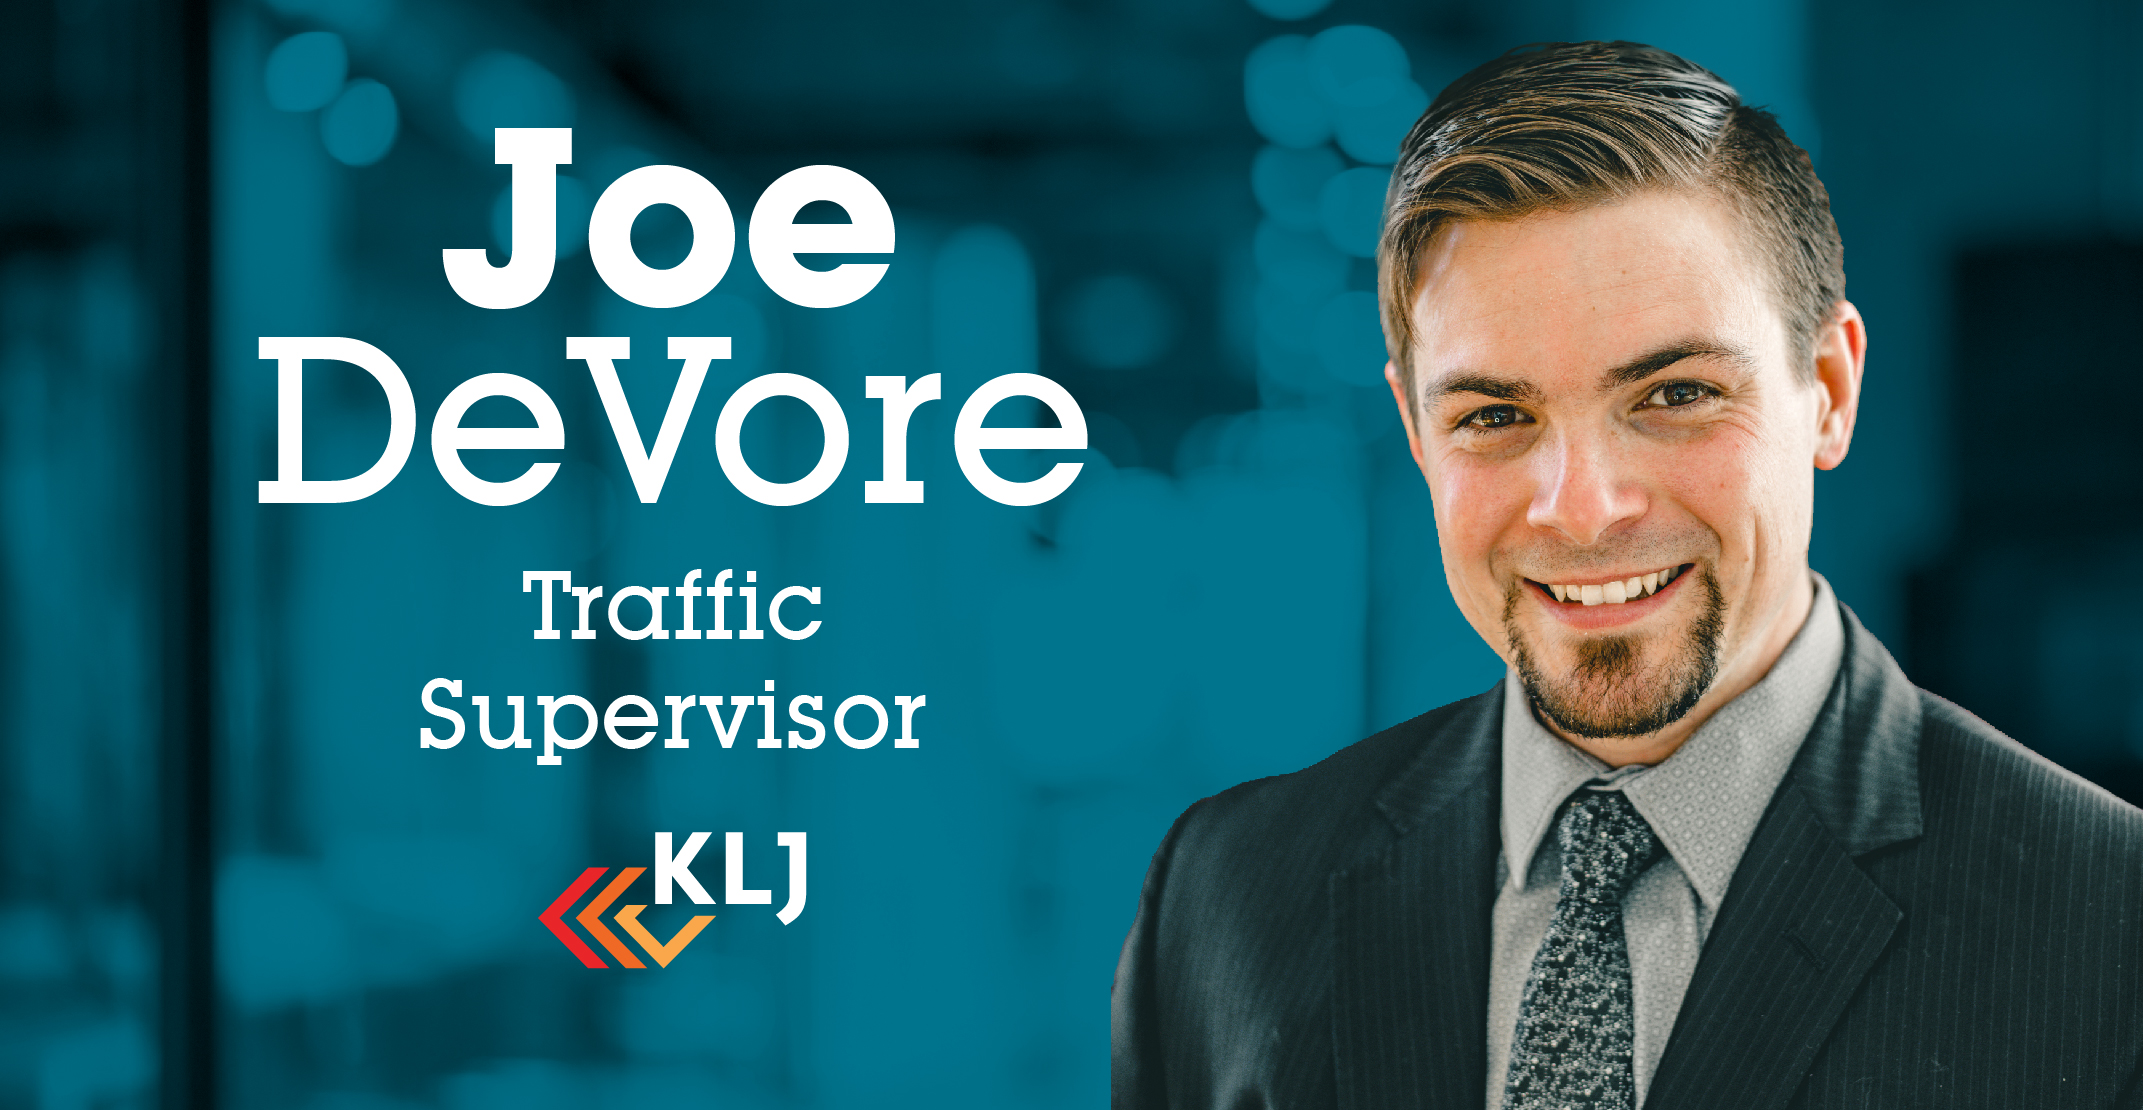 KLJ Promotes DeVore to Traffic Supervisor